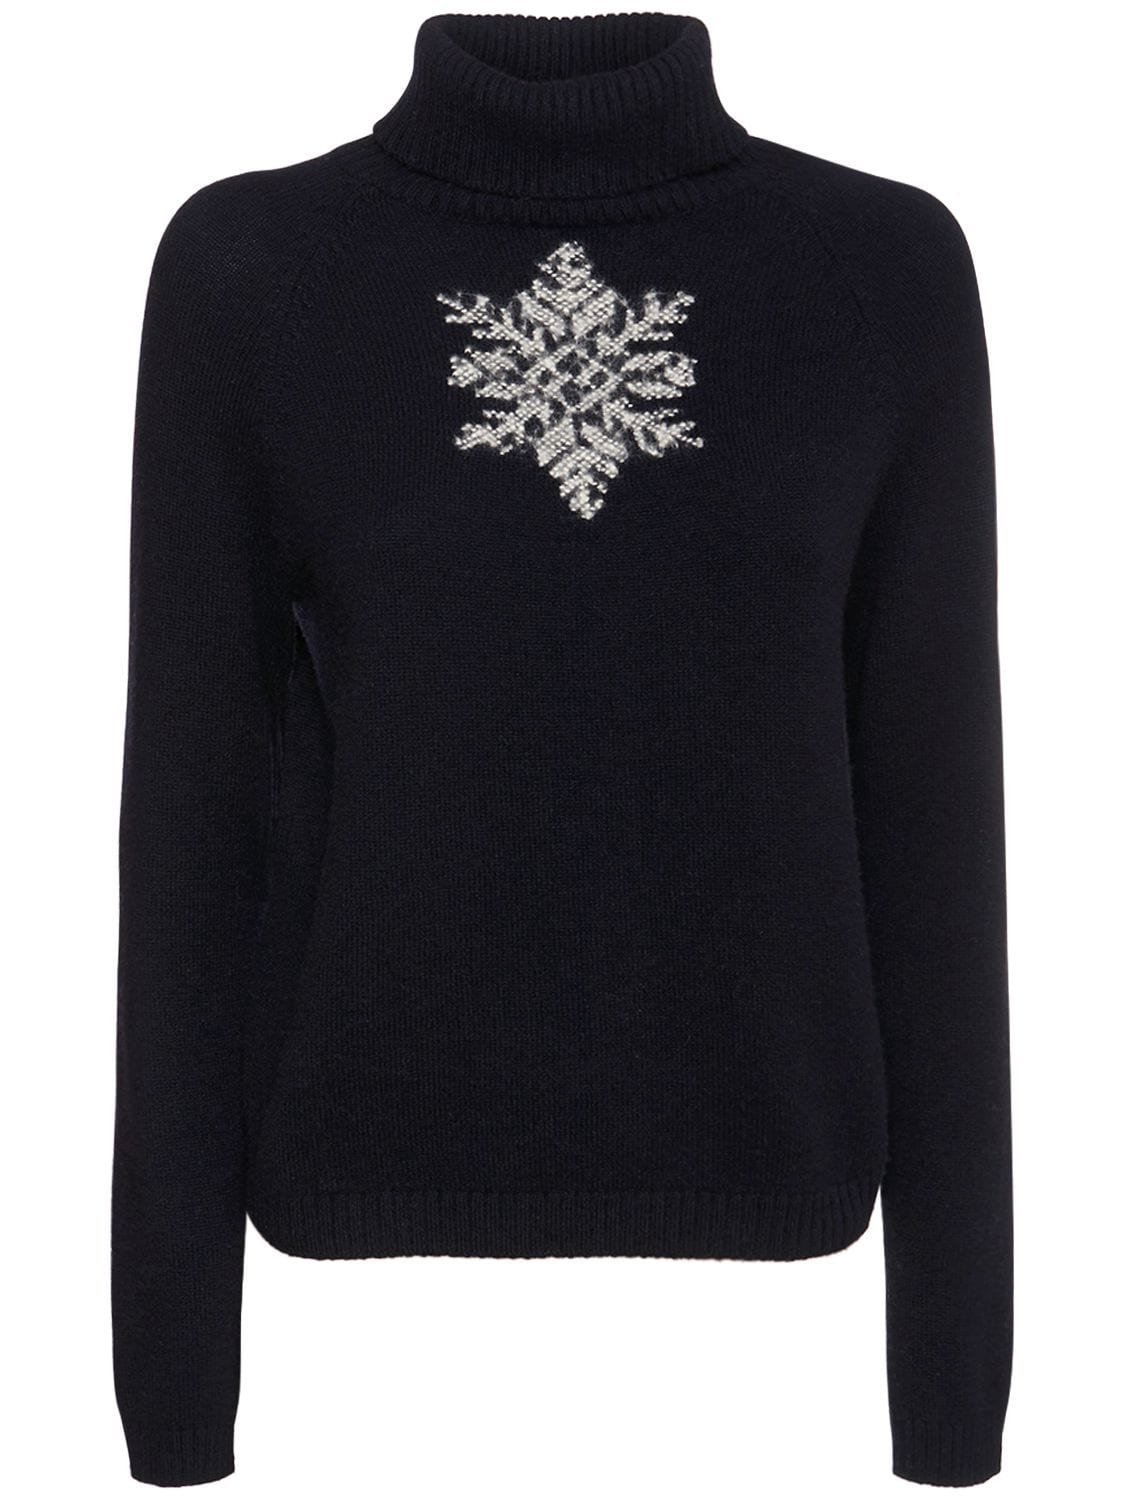 DG2 By Diane Gilman Embellished Knit Turtleneck Sweater, 40% OFF